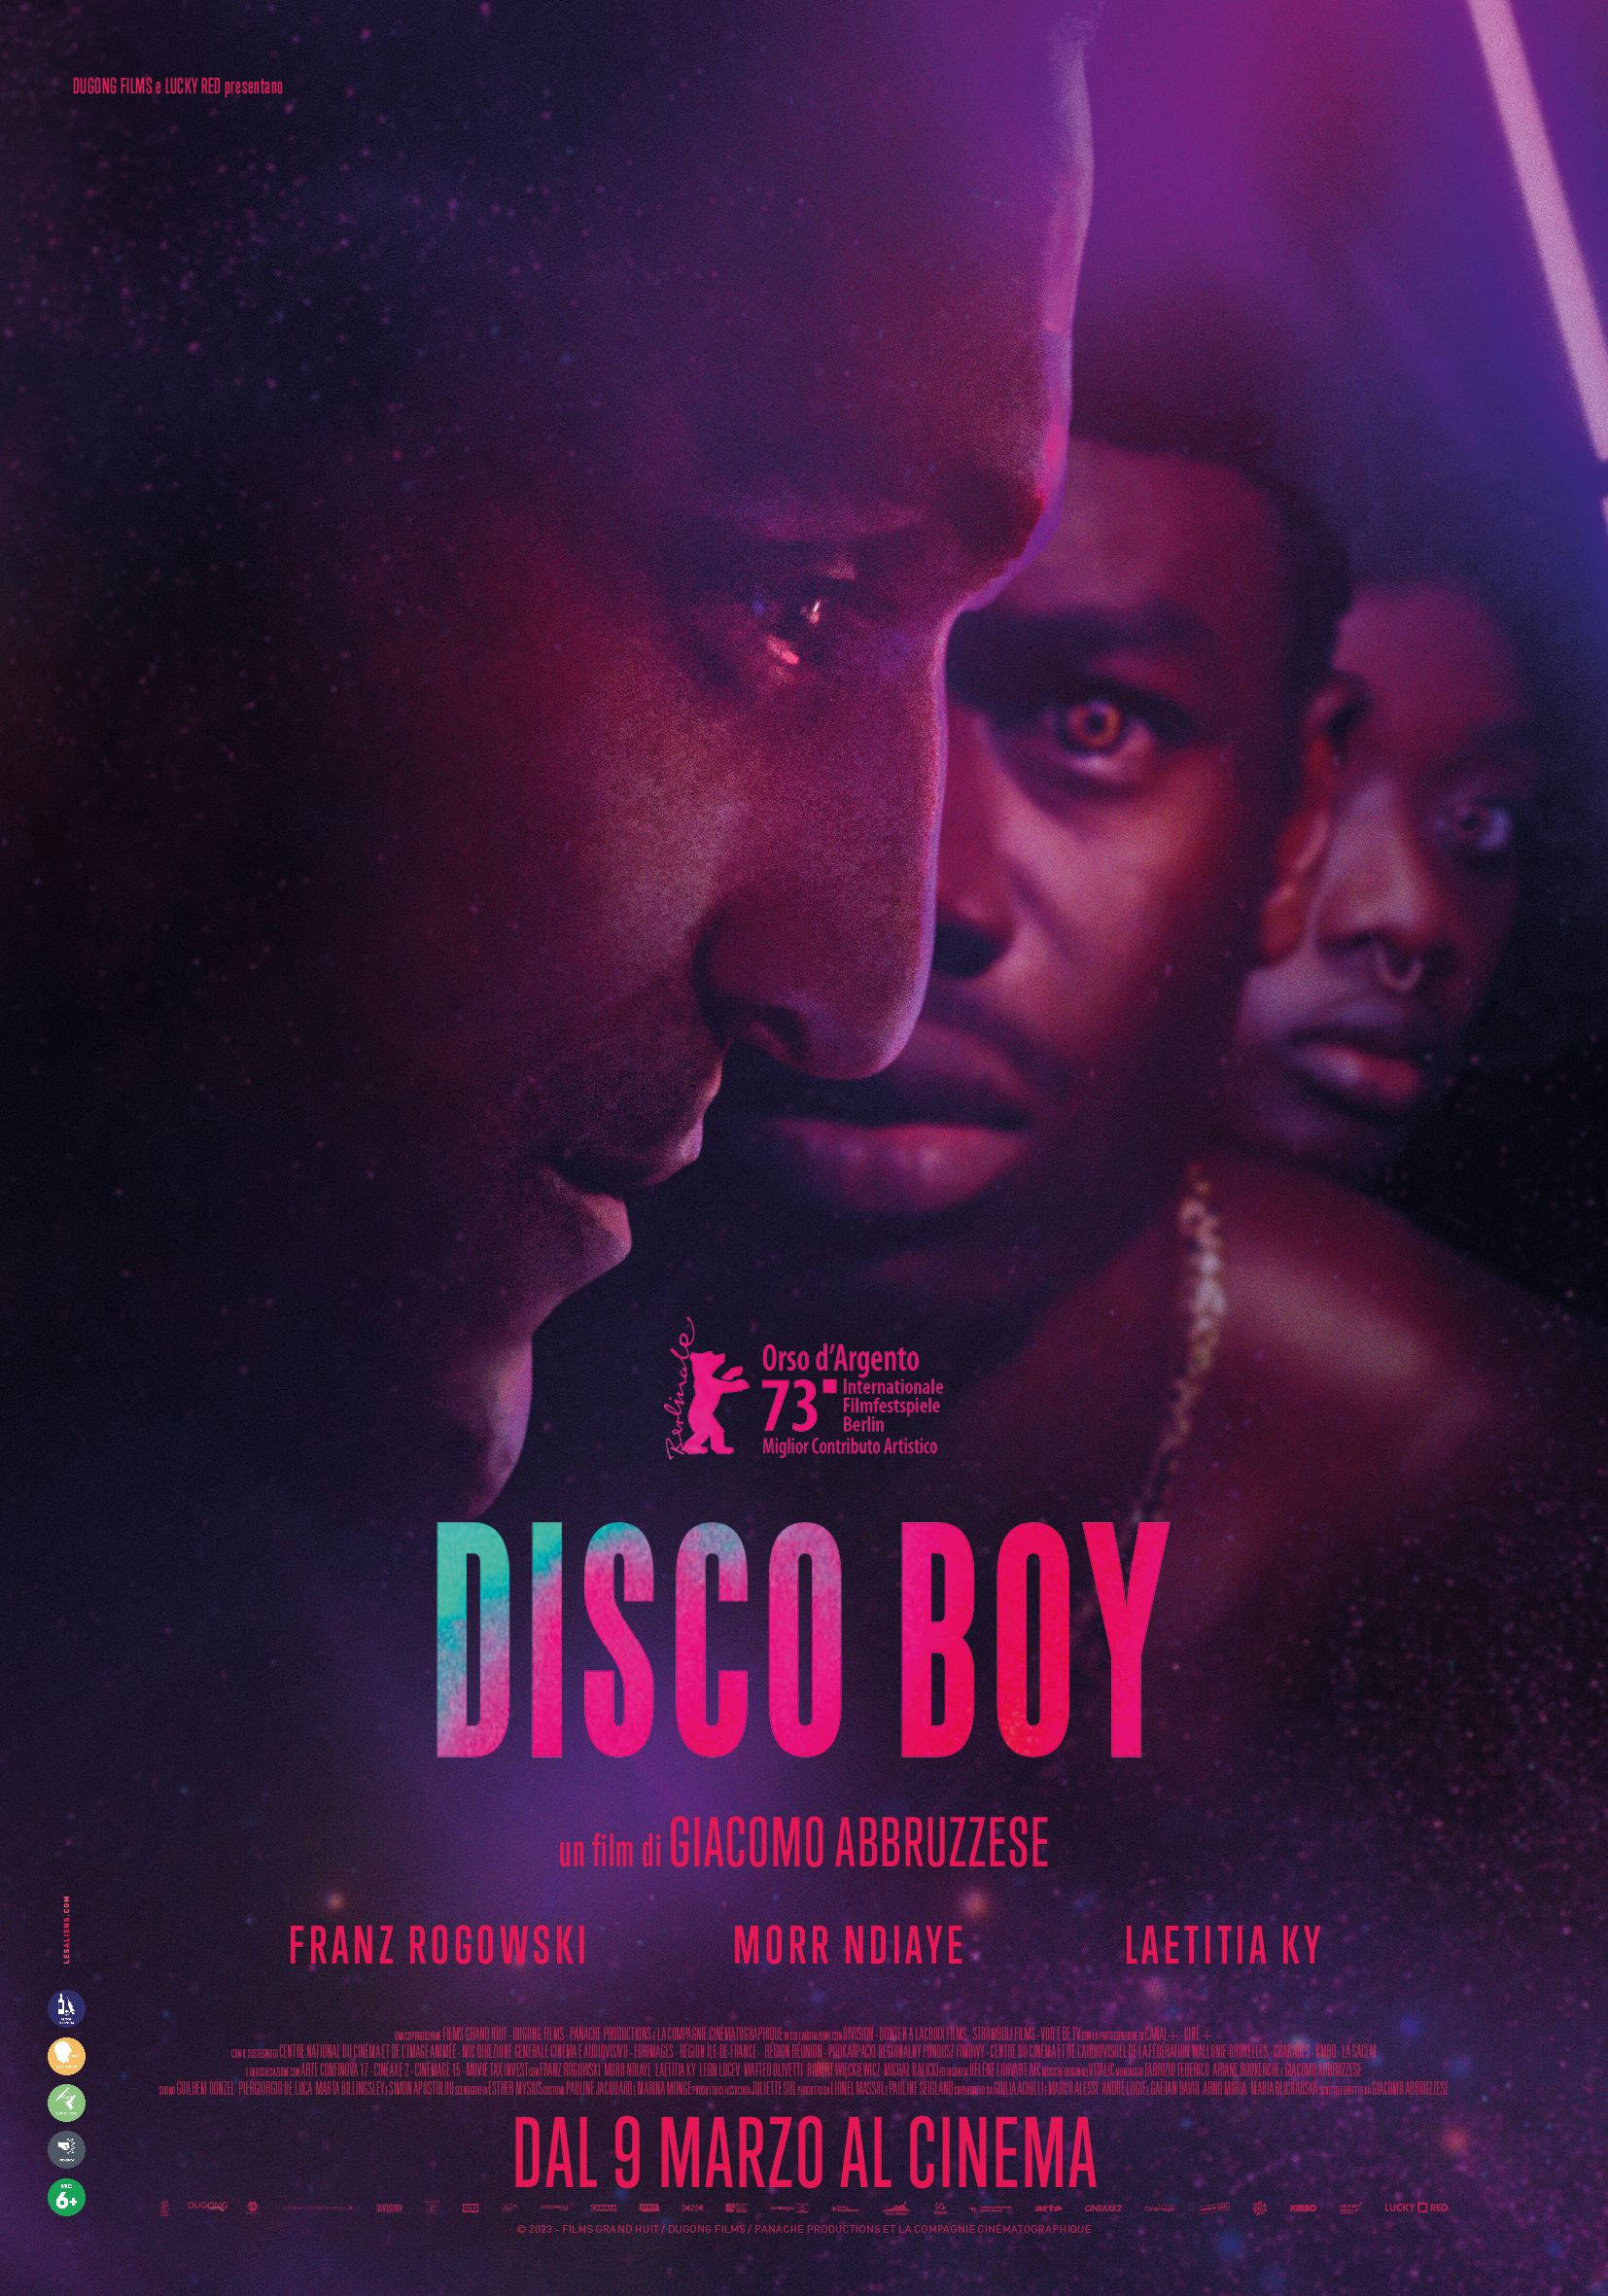 "Disco Boy" di Giacomo Abbruzzese designato Film della Critica dal Sindacato Nazionale Critici Cinematografici Italiani - SNCCI